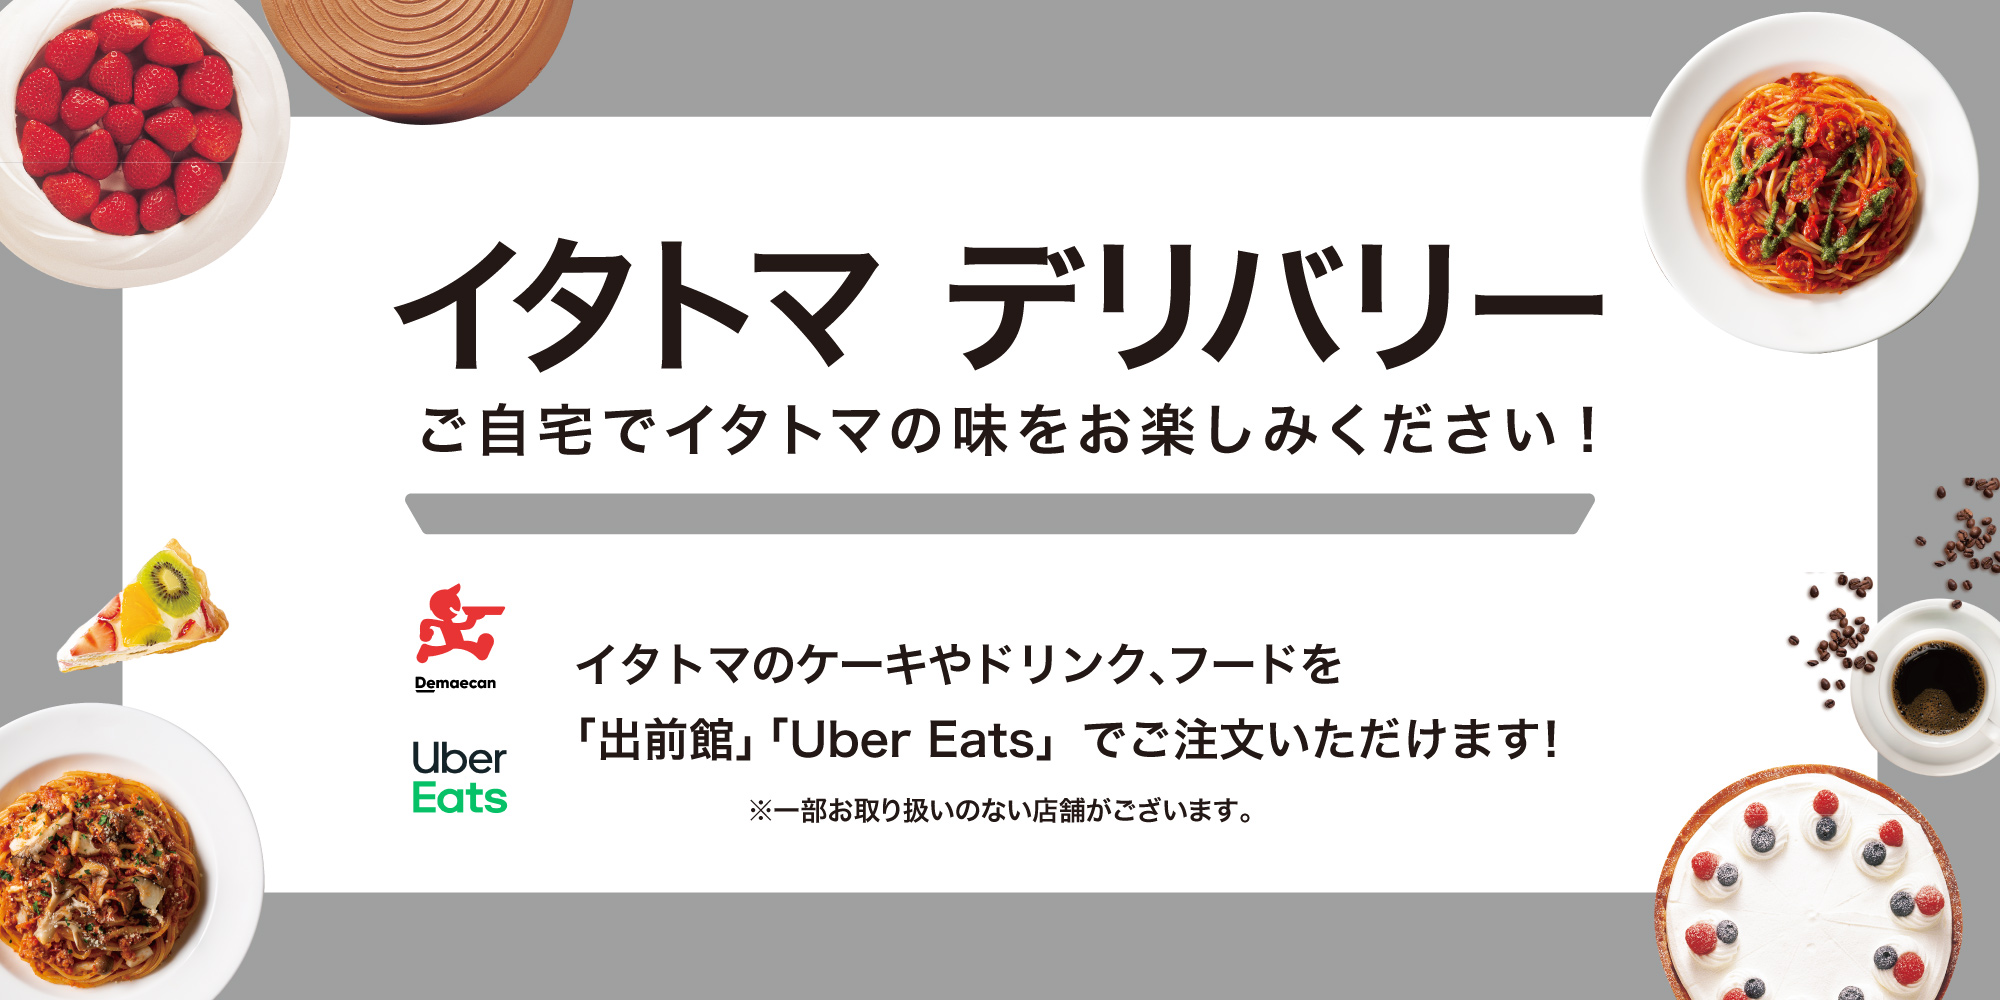 イタリアン・トマトのデリバリーは「出前館」「Uber Eats」からお気軽にご注文ください！